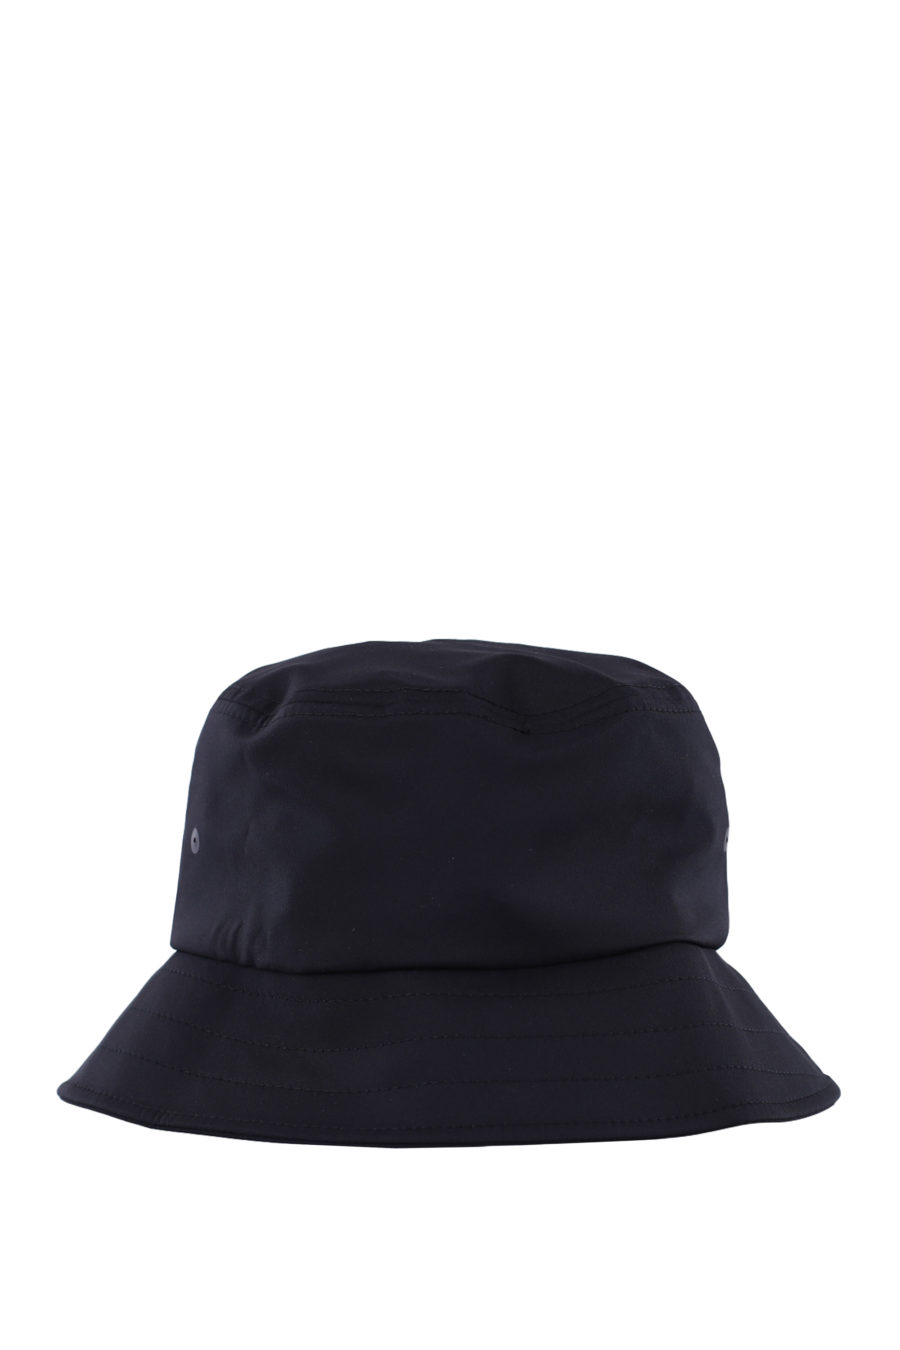 Chapéu de pescador preto reversível com logótipo branco - IMG 0348